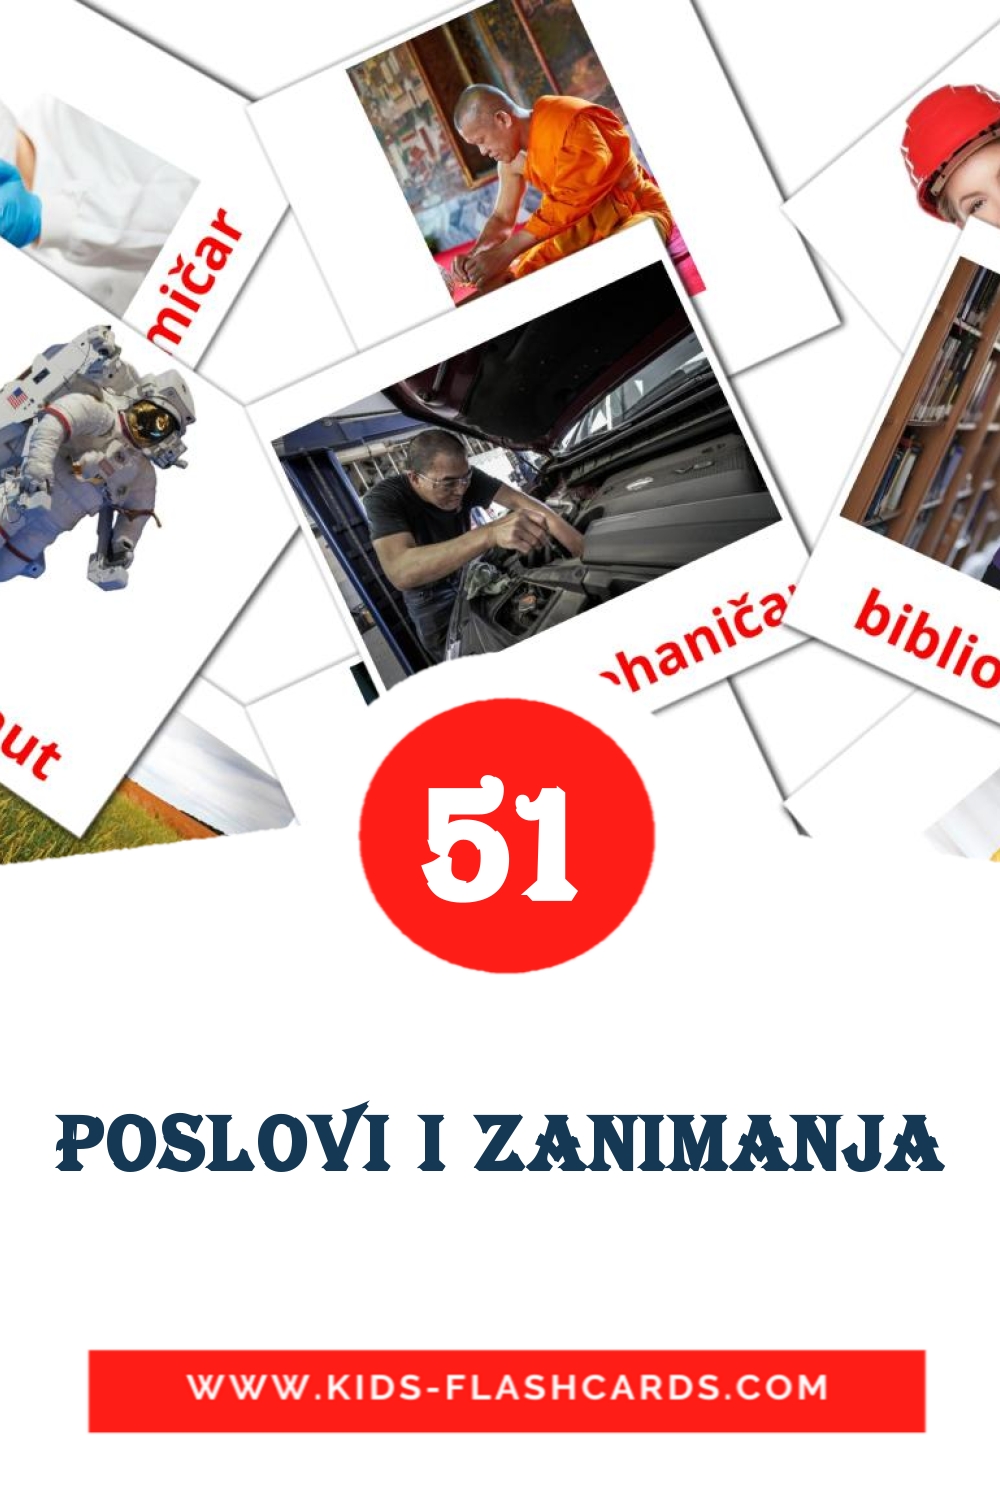 51 tarjetas didacticas de Poslovi i zanimanja para el jardín de infancia en serbio